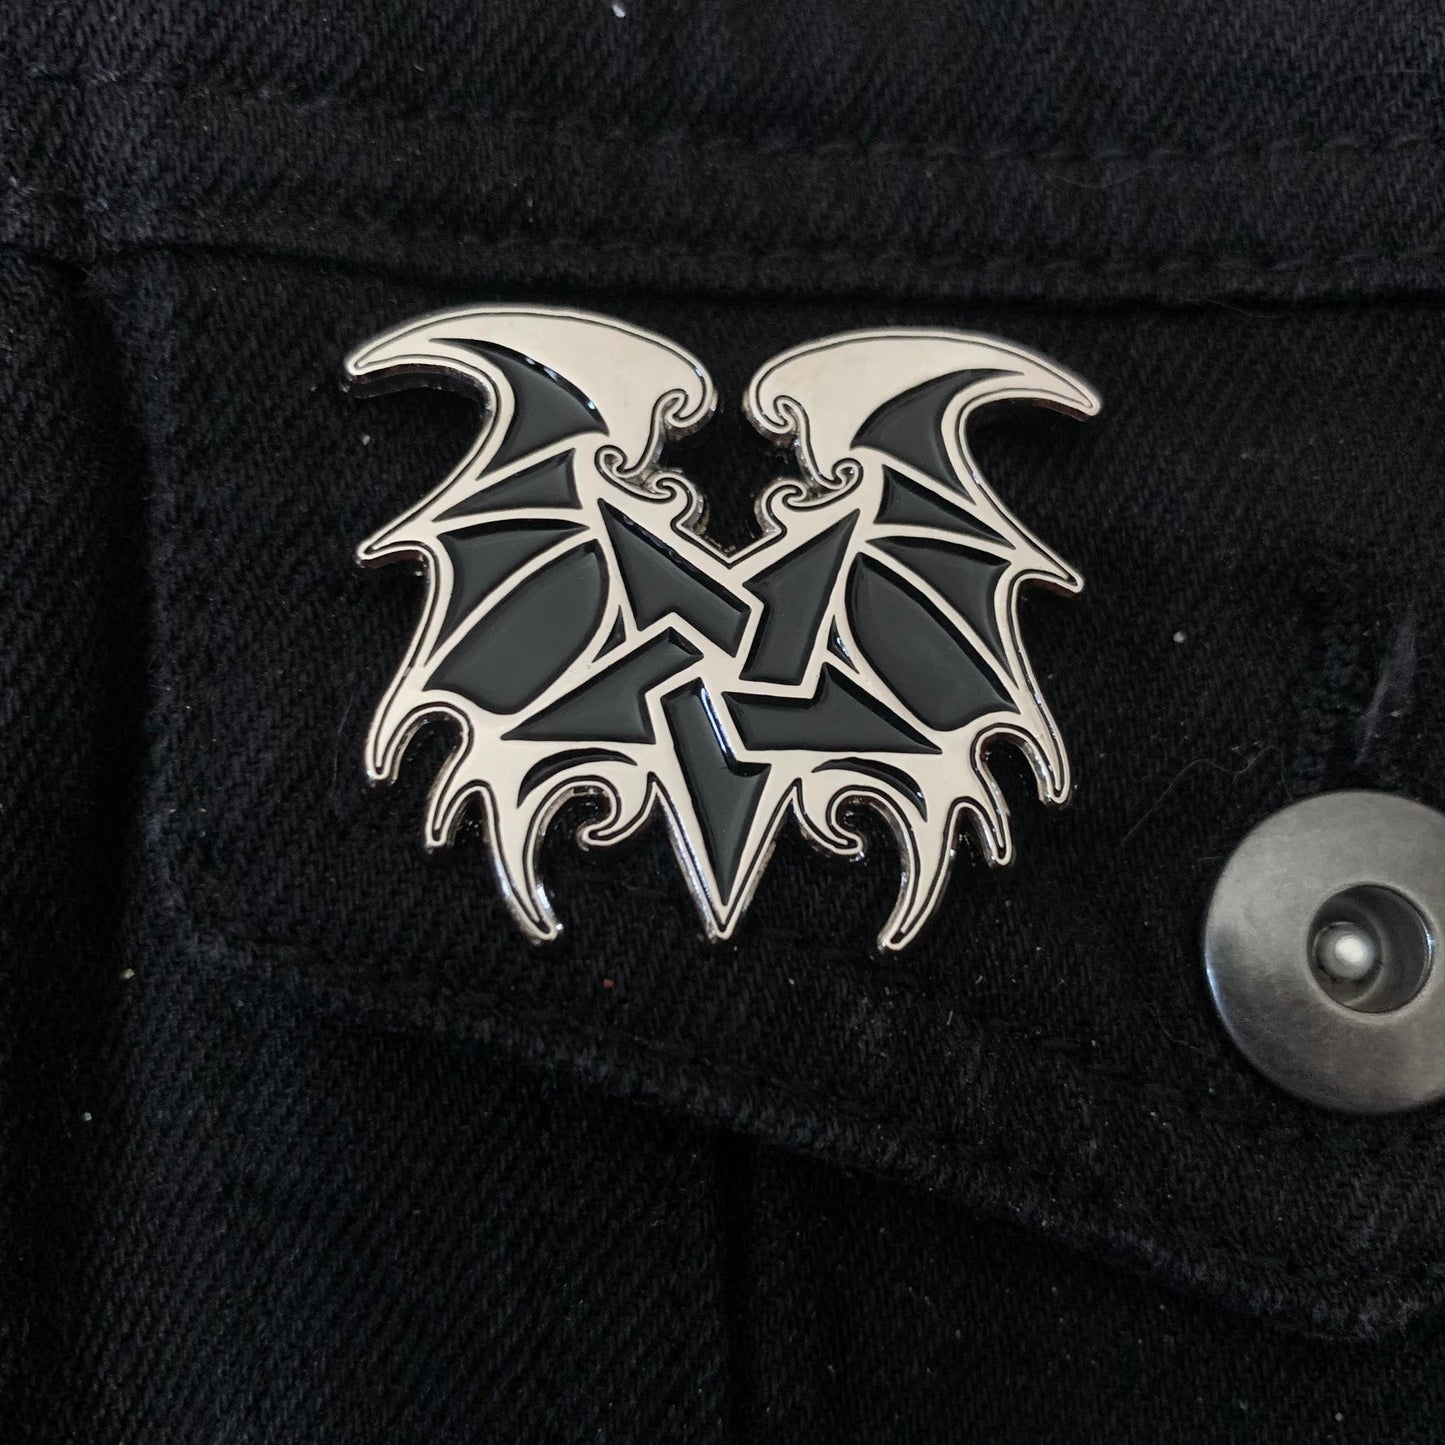 [SOLD OUT] KARMAZID "Dragon Magick" Logo Metal Enamel Pin (official)